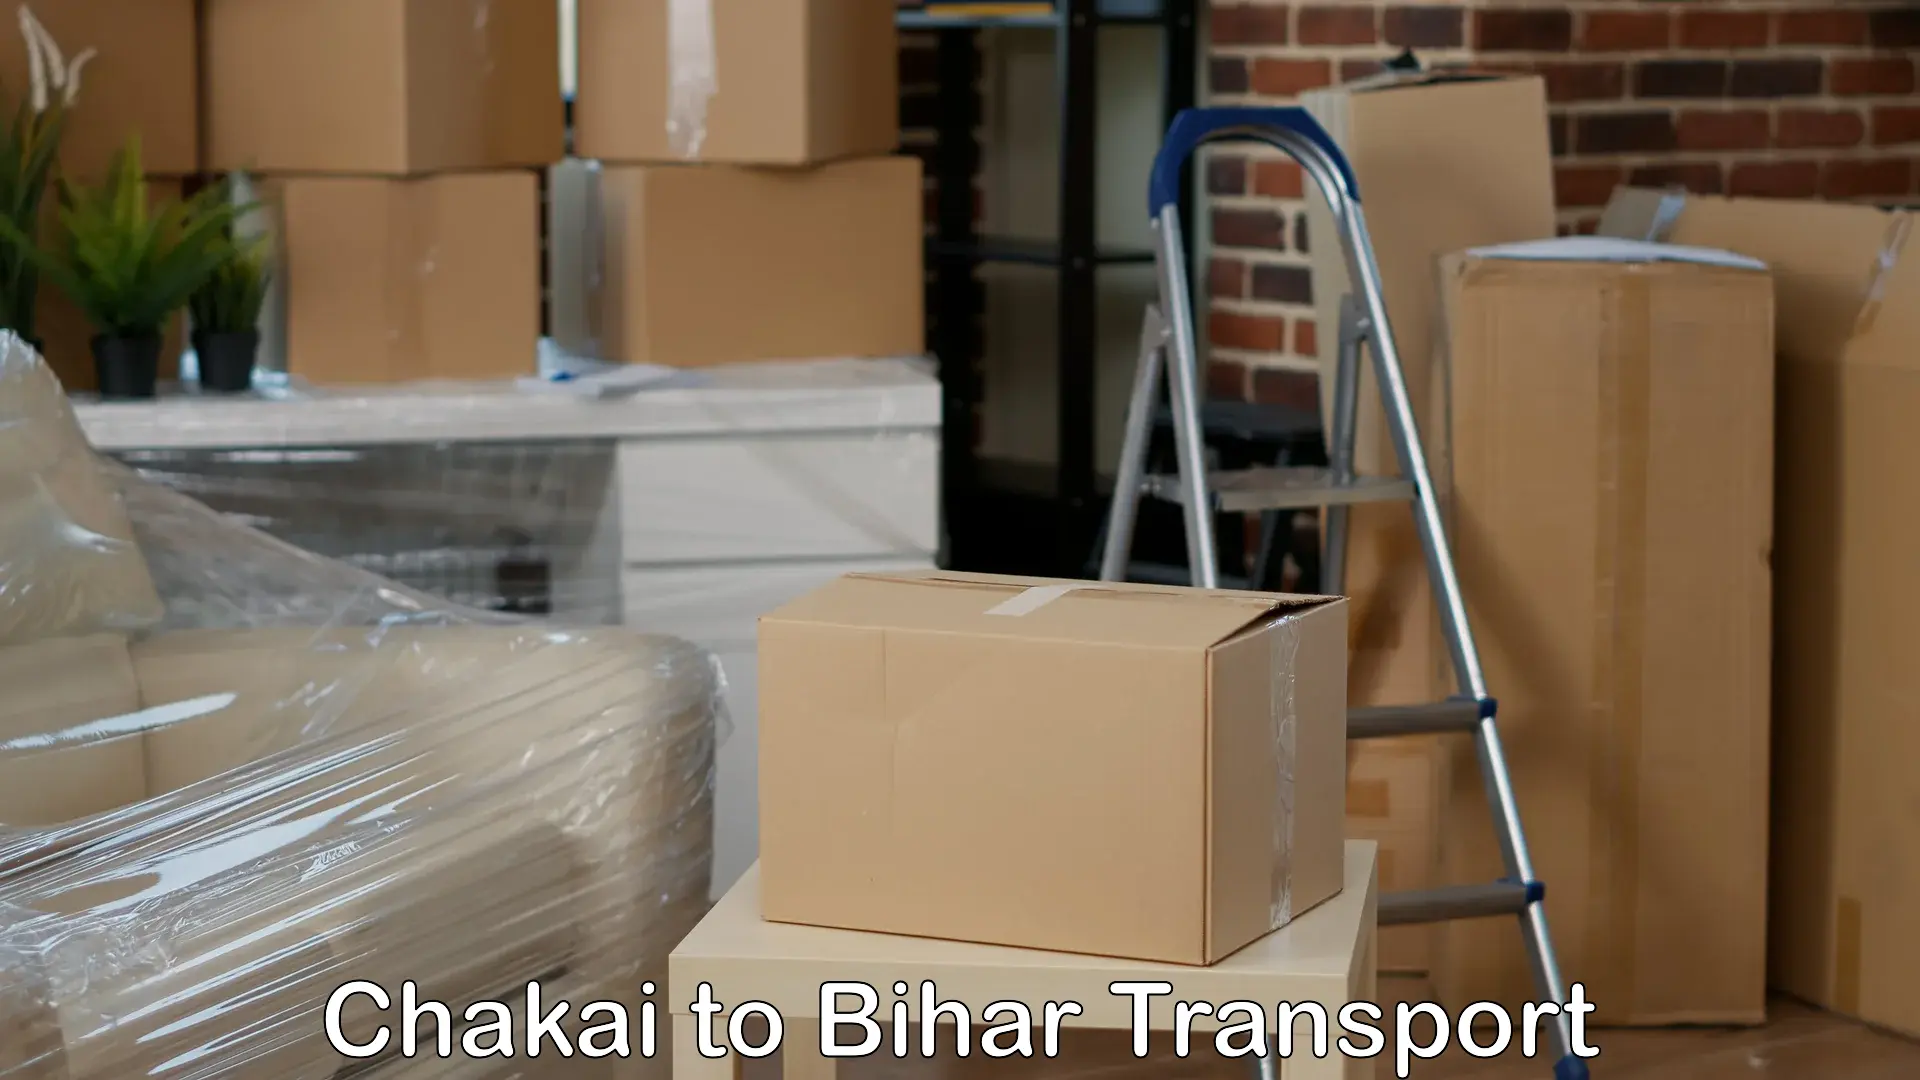 Bike transport service Chakai to Manjhaul